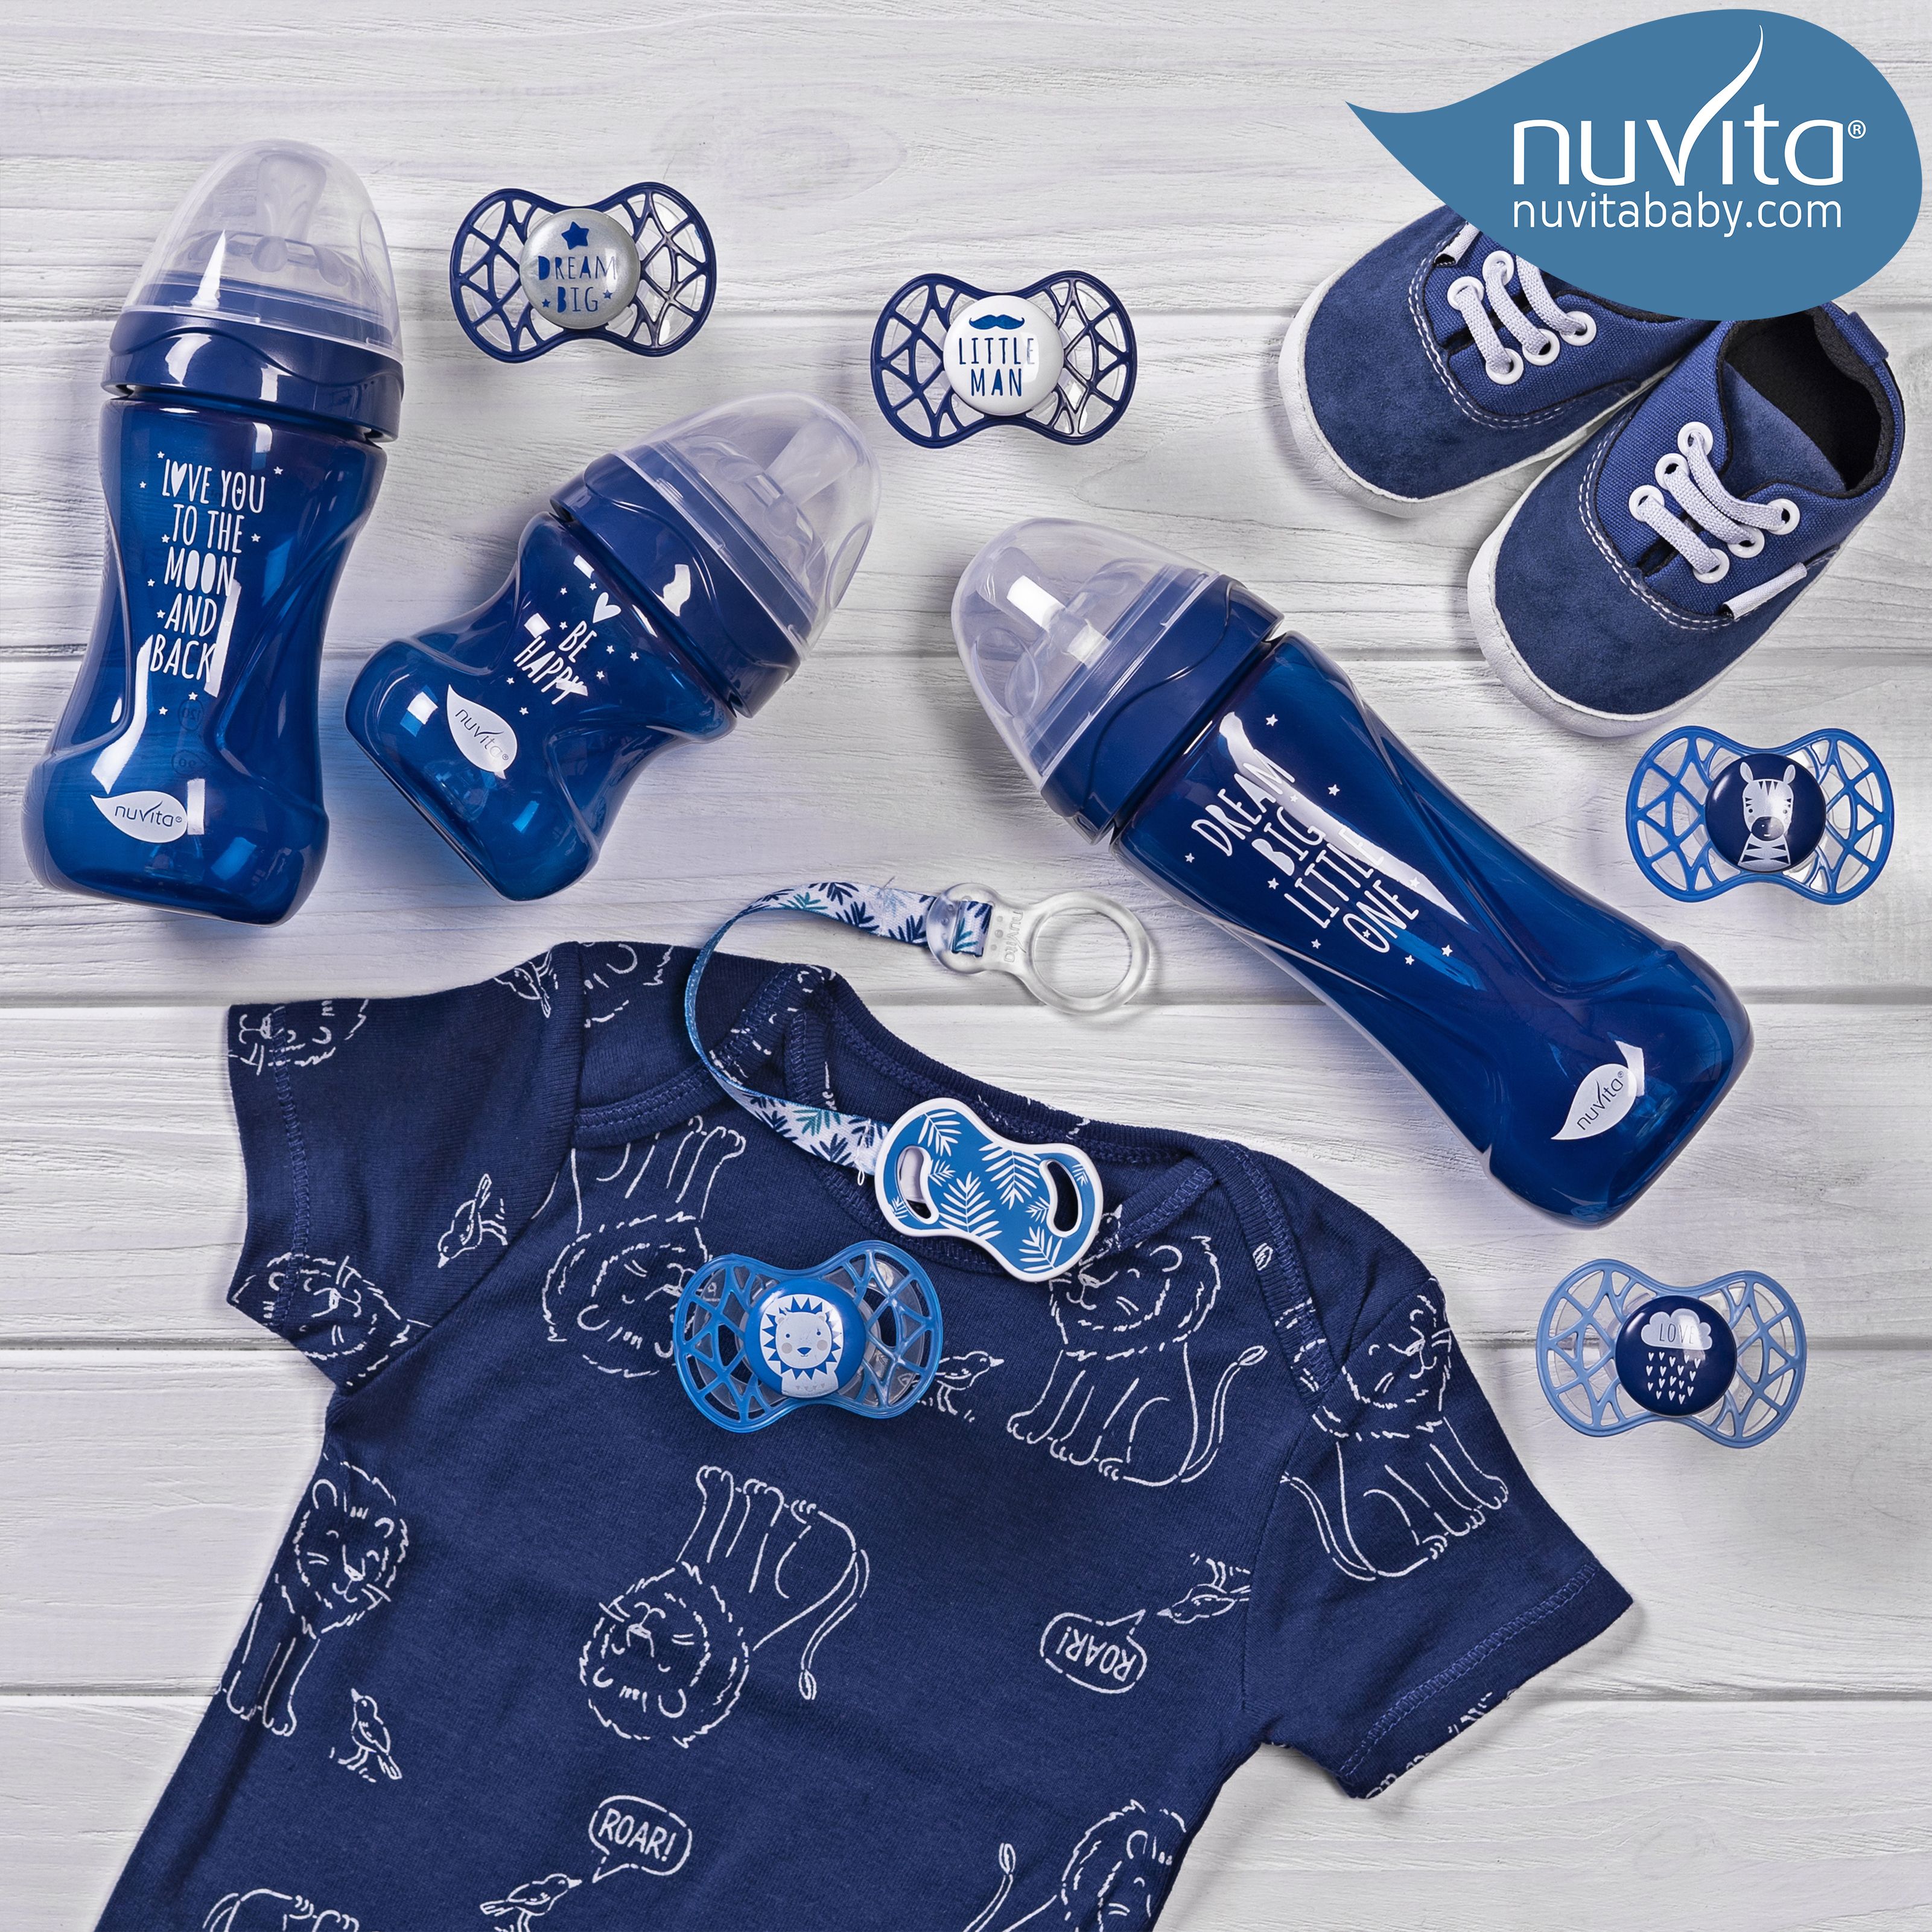 Бутылочка для кормления Nuvita Mimic Cool, антиколиковая, 150 мл, синий (NV6012NIGHTBLUE) - фото 11